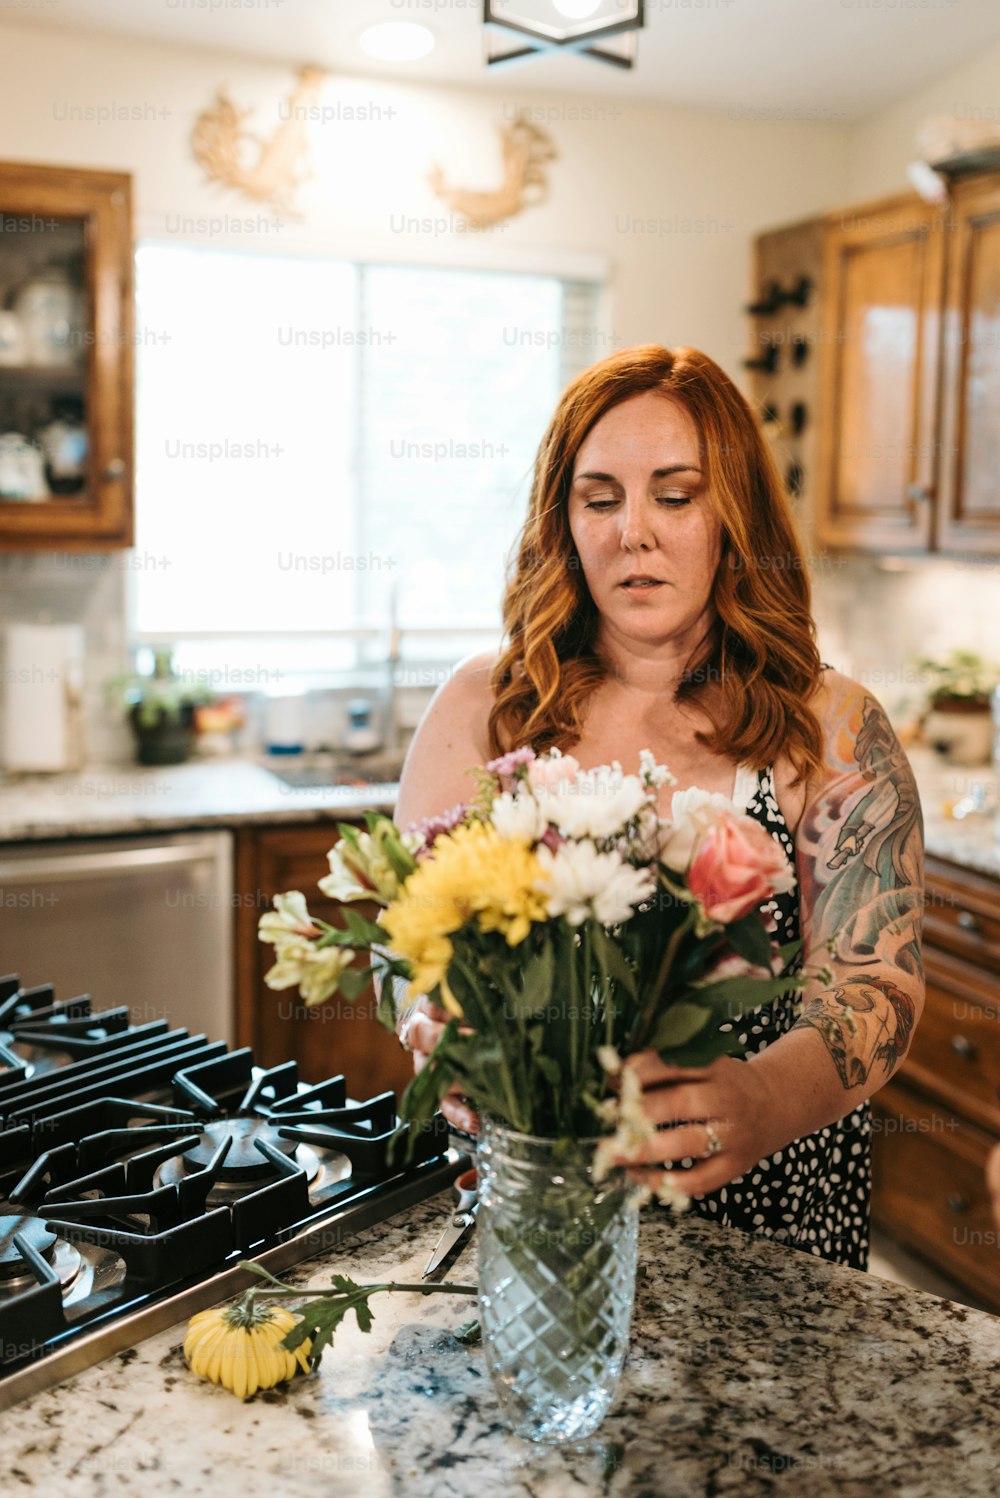 Une femme debout dans une cuisine tenant un vase de fleurs